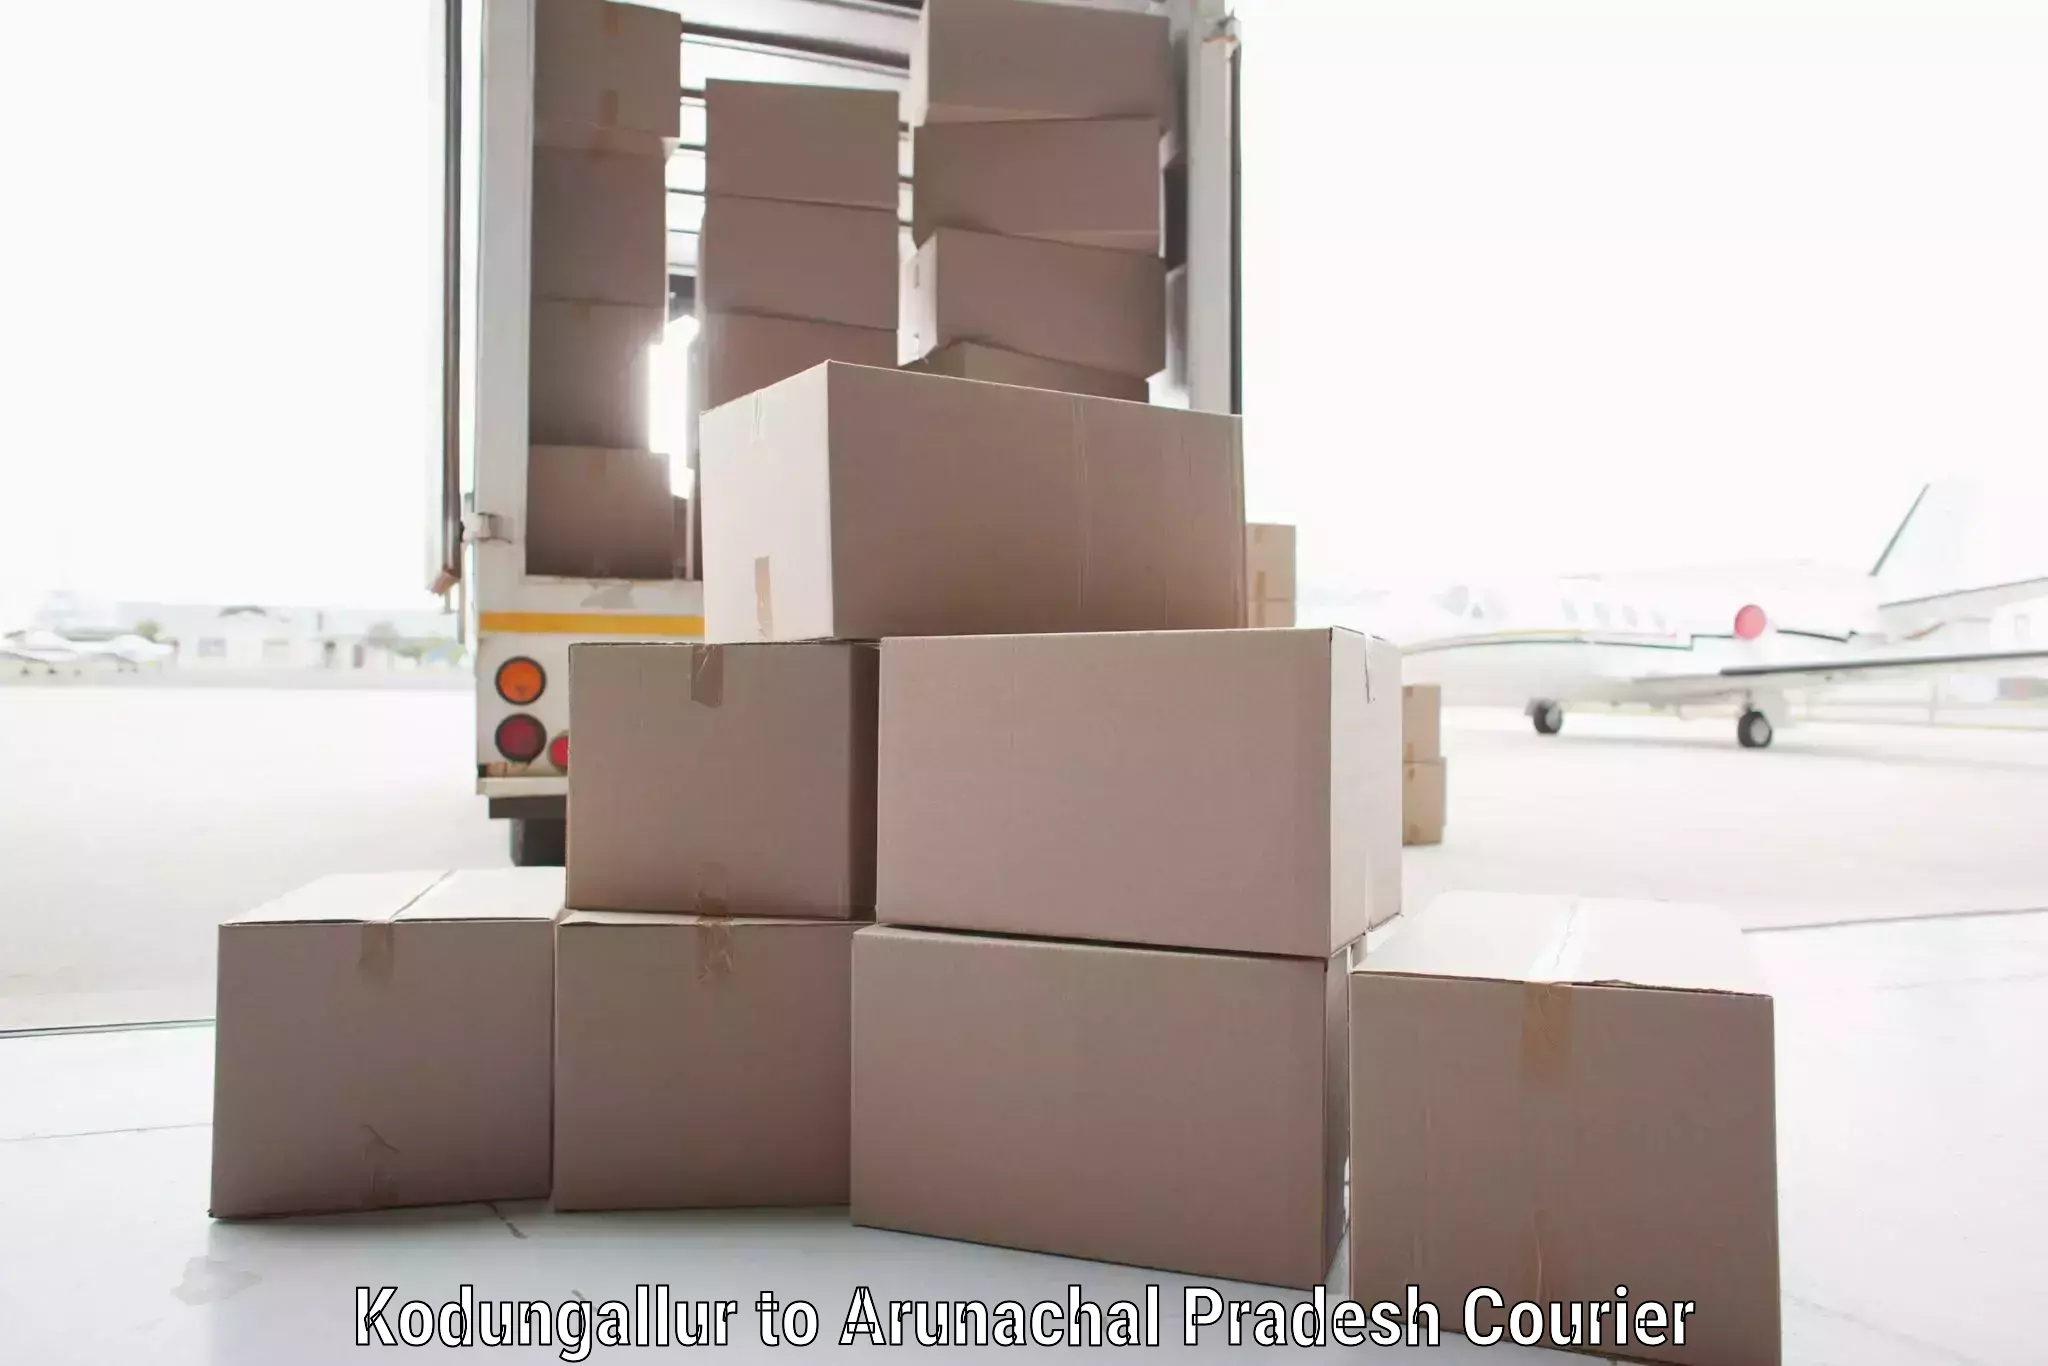 Efficient parcel service Kodungallur to Arunachal Pradesh